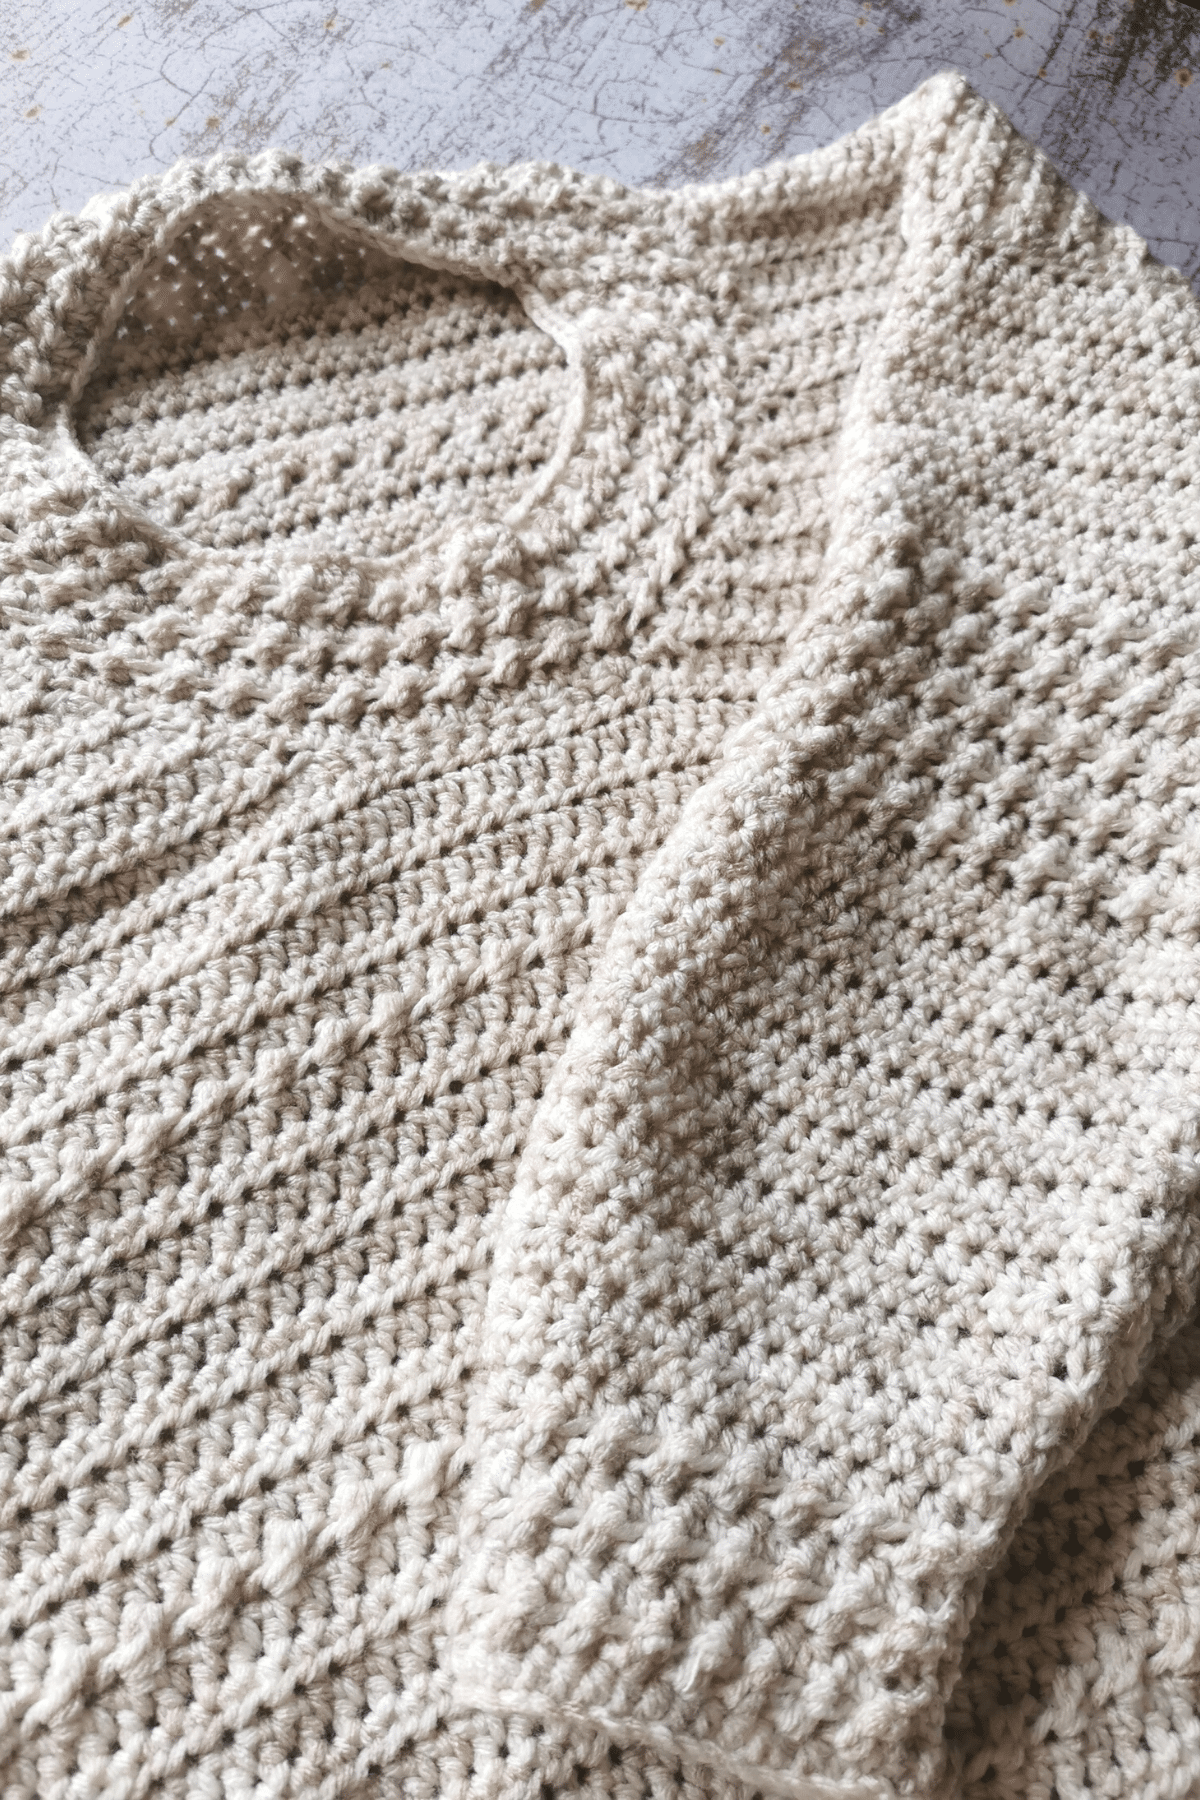 Beginner Crochet Sweater · Hopelessly Devoted Crochet